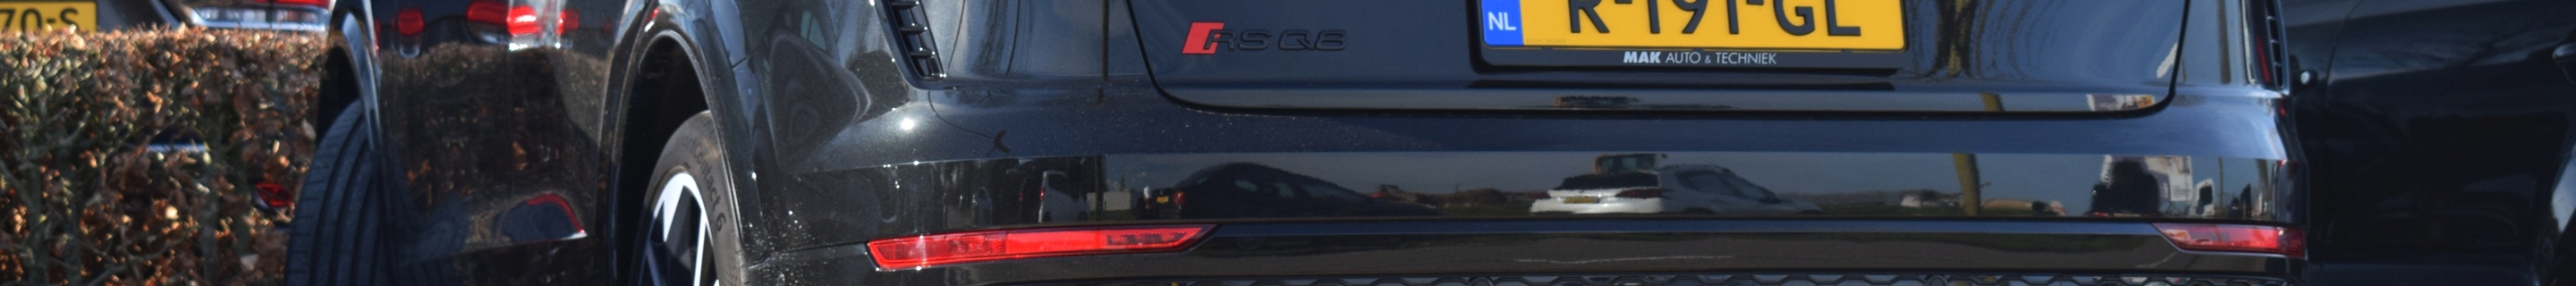 Audi RS Q8